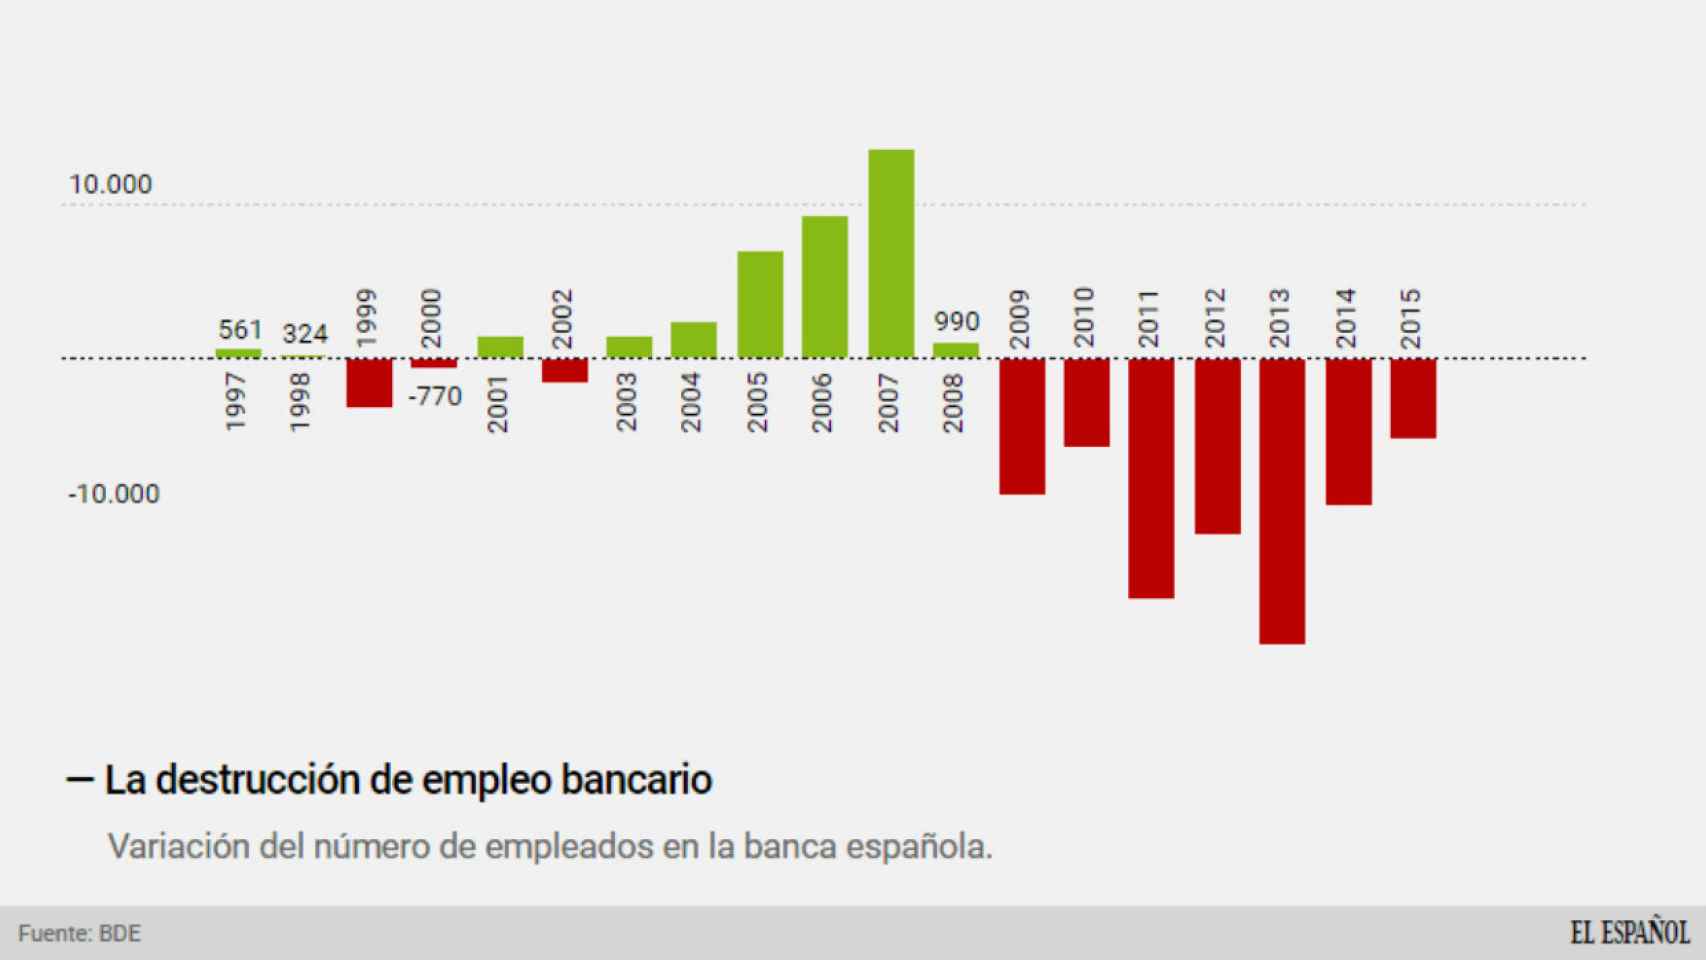 Creación y destrucción de empleo bancario en España.